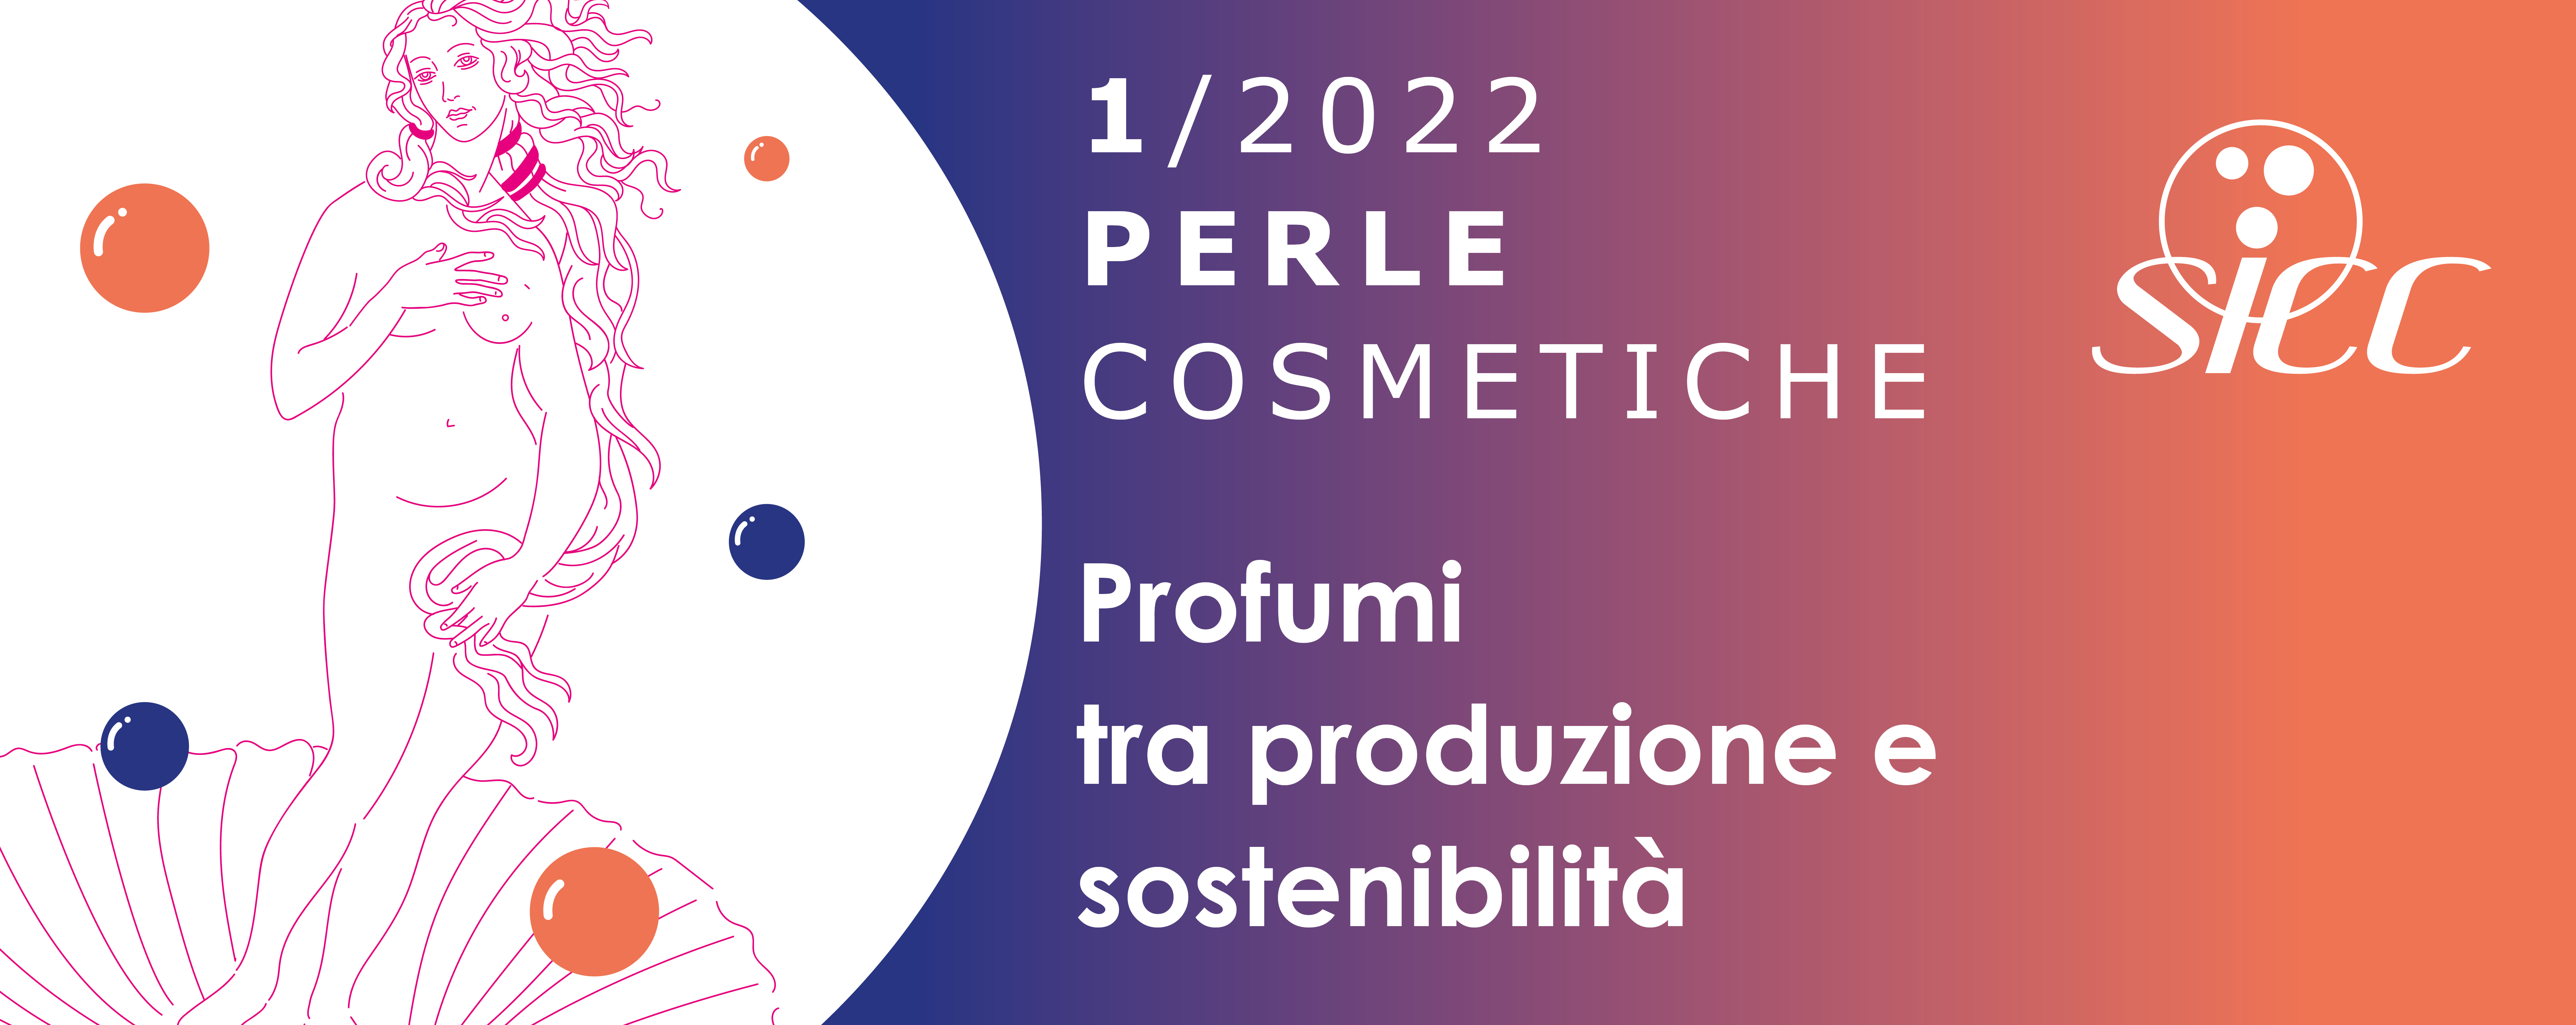 PERLA COSMETICA N. 1/2022 Profumi tra produzione e sostenibilità